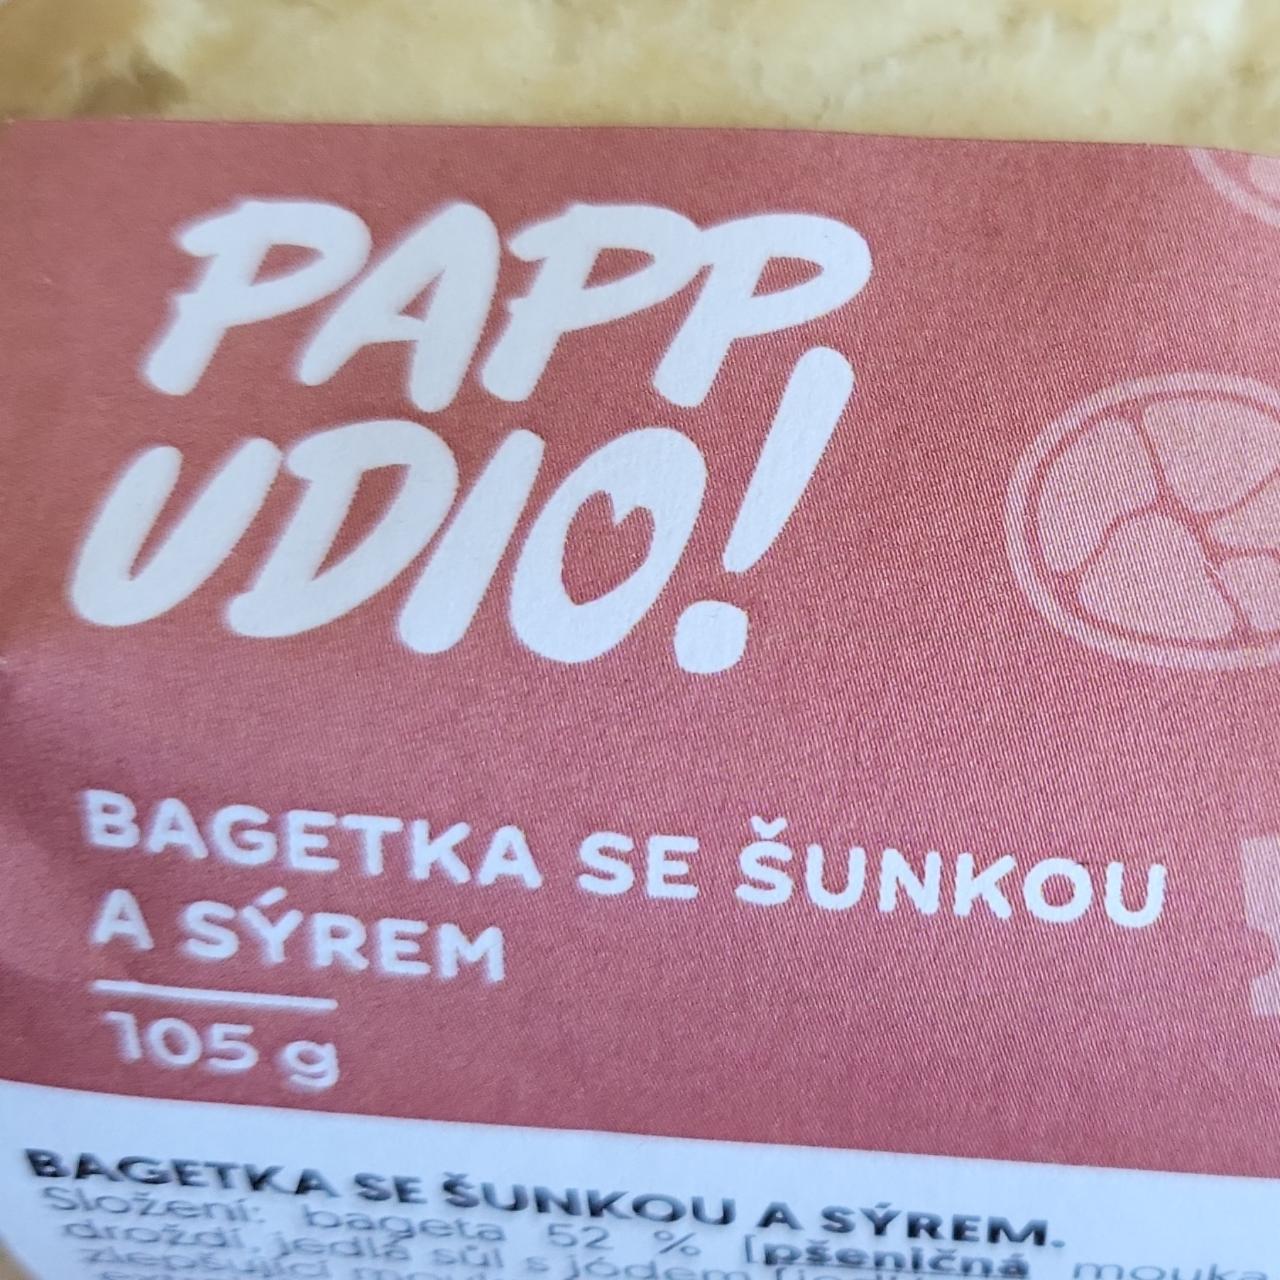 Fotografie - Bagetka se šunkou a sýrem PAPP UDIO!